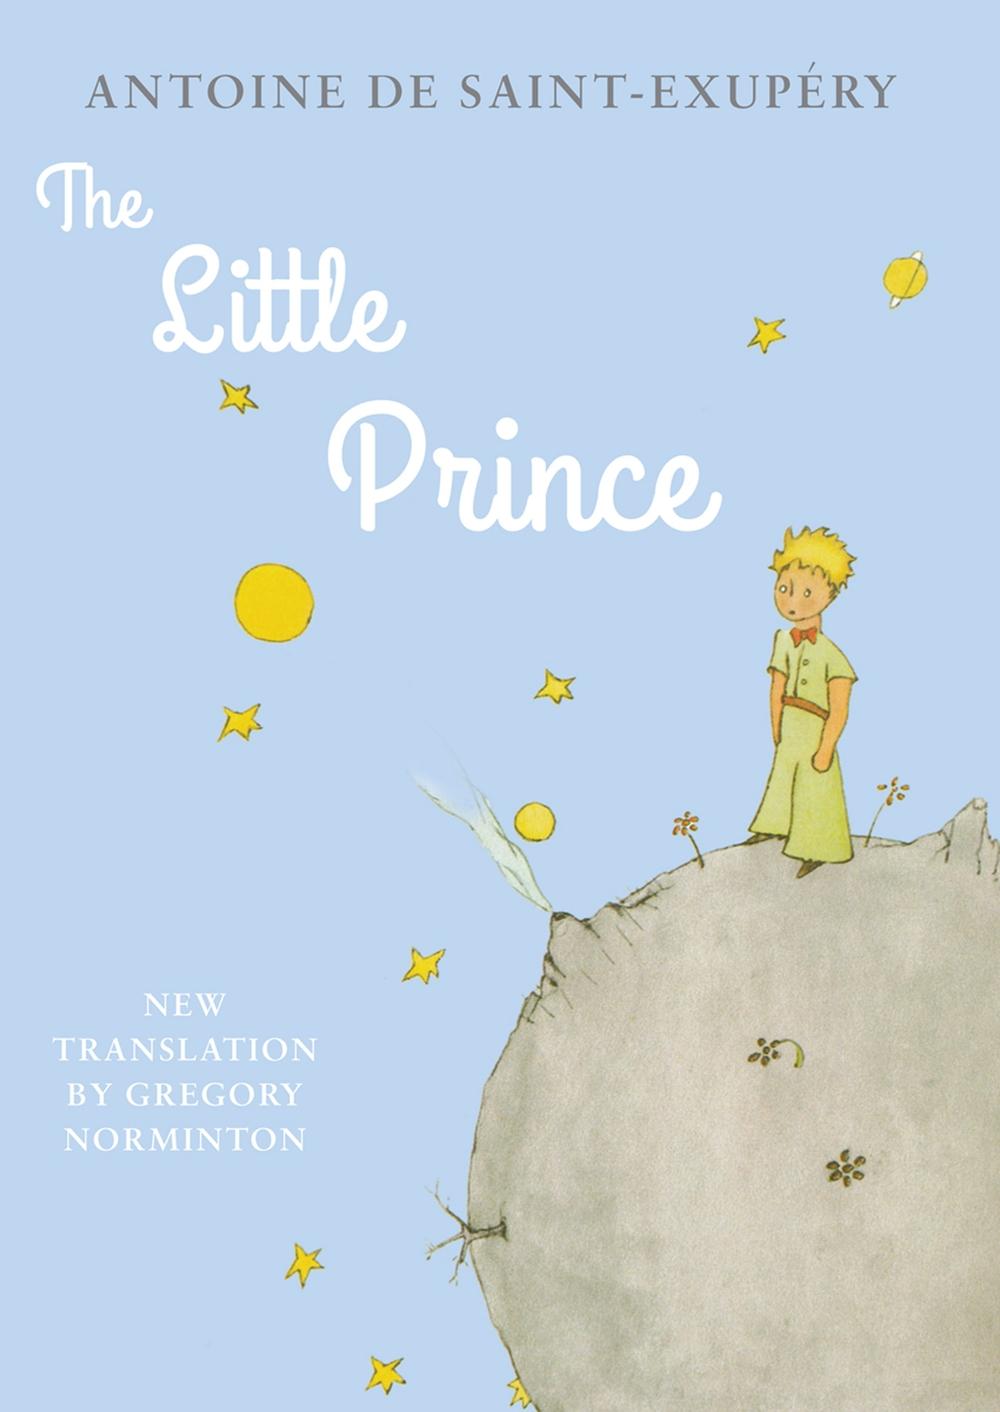 Little Prince - Antoine De Saint-Exupery